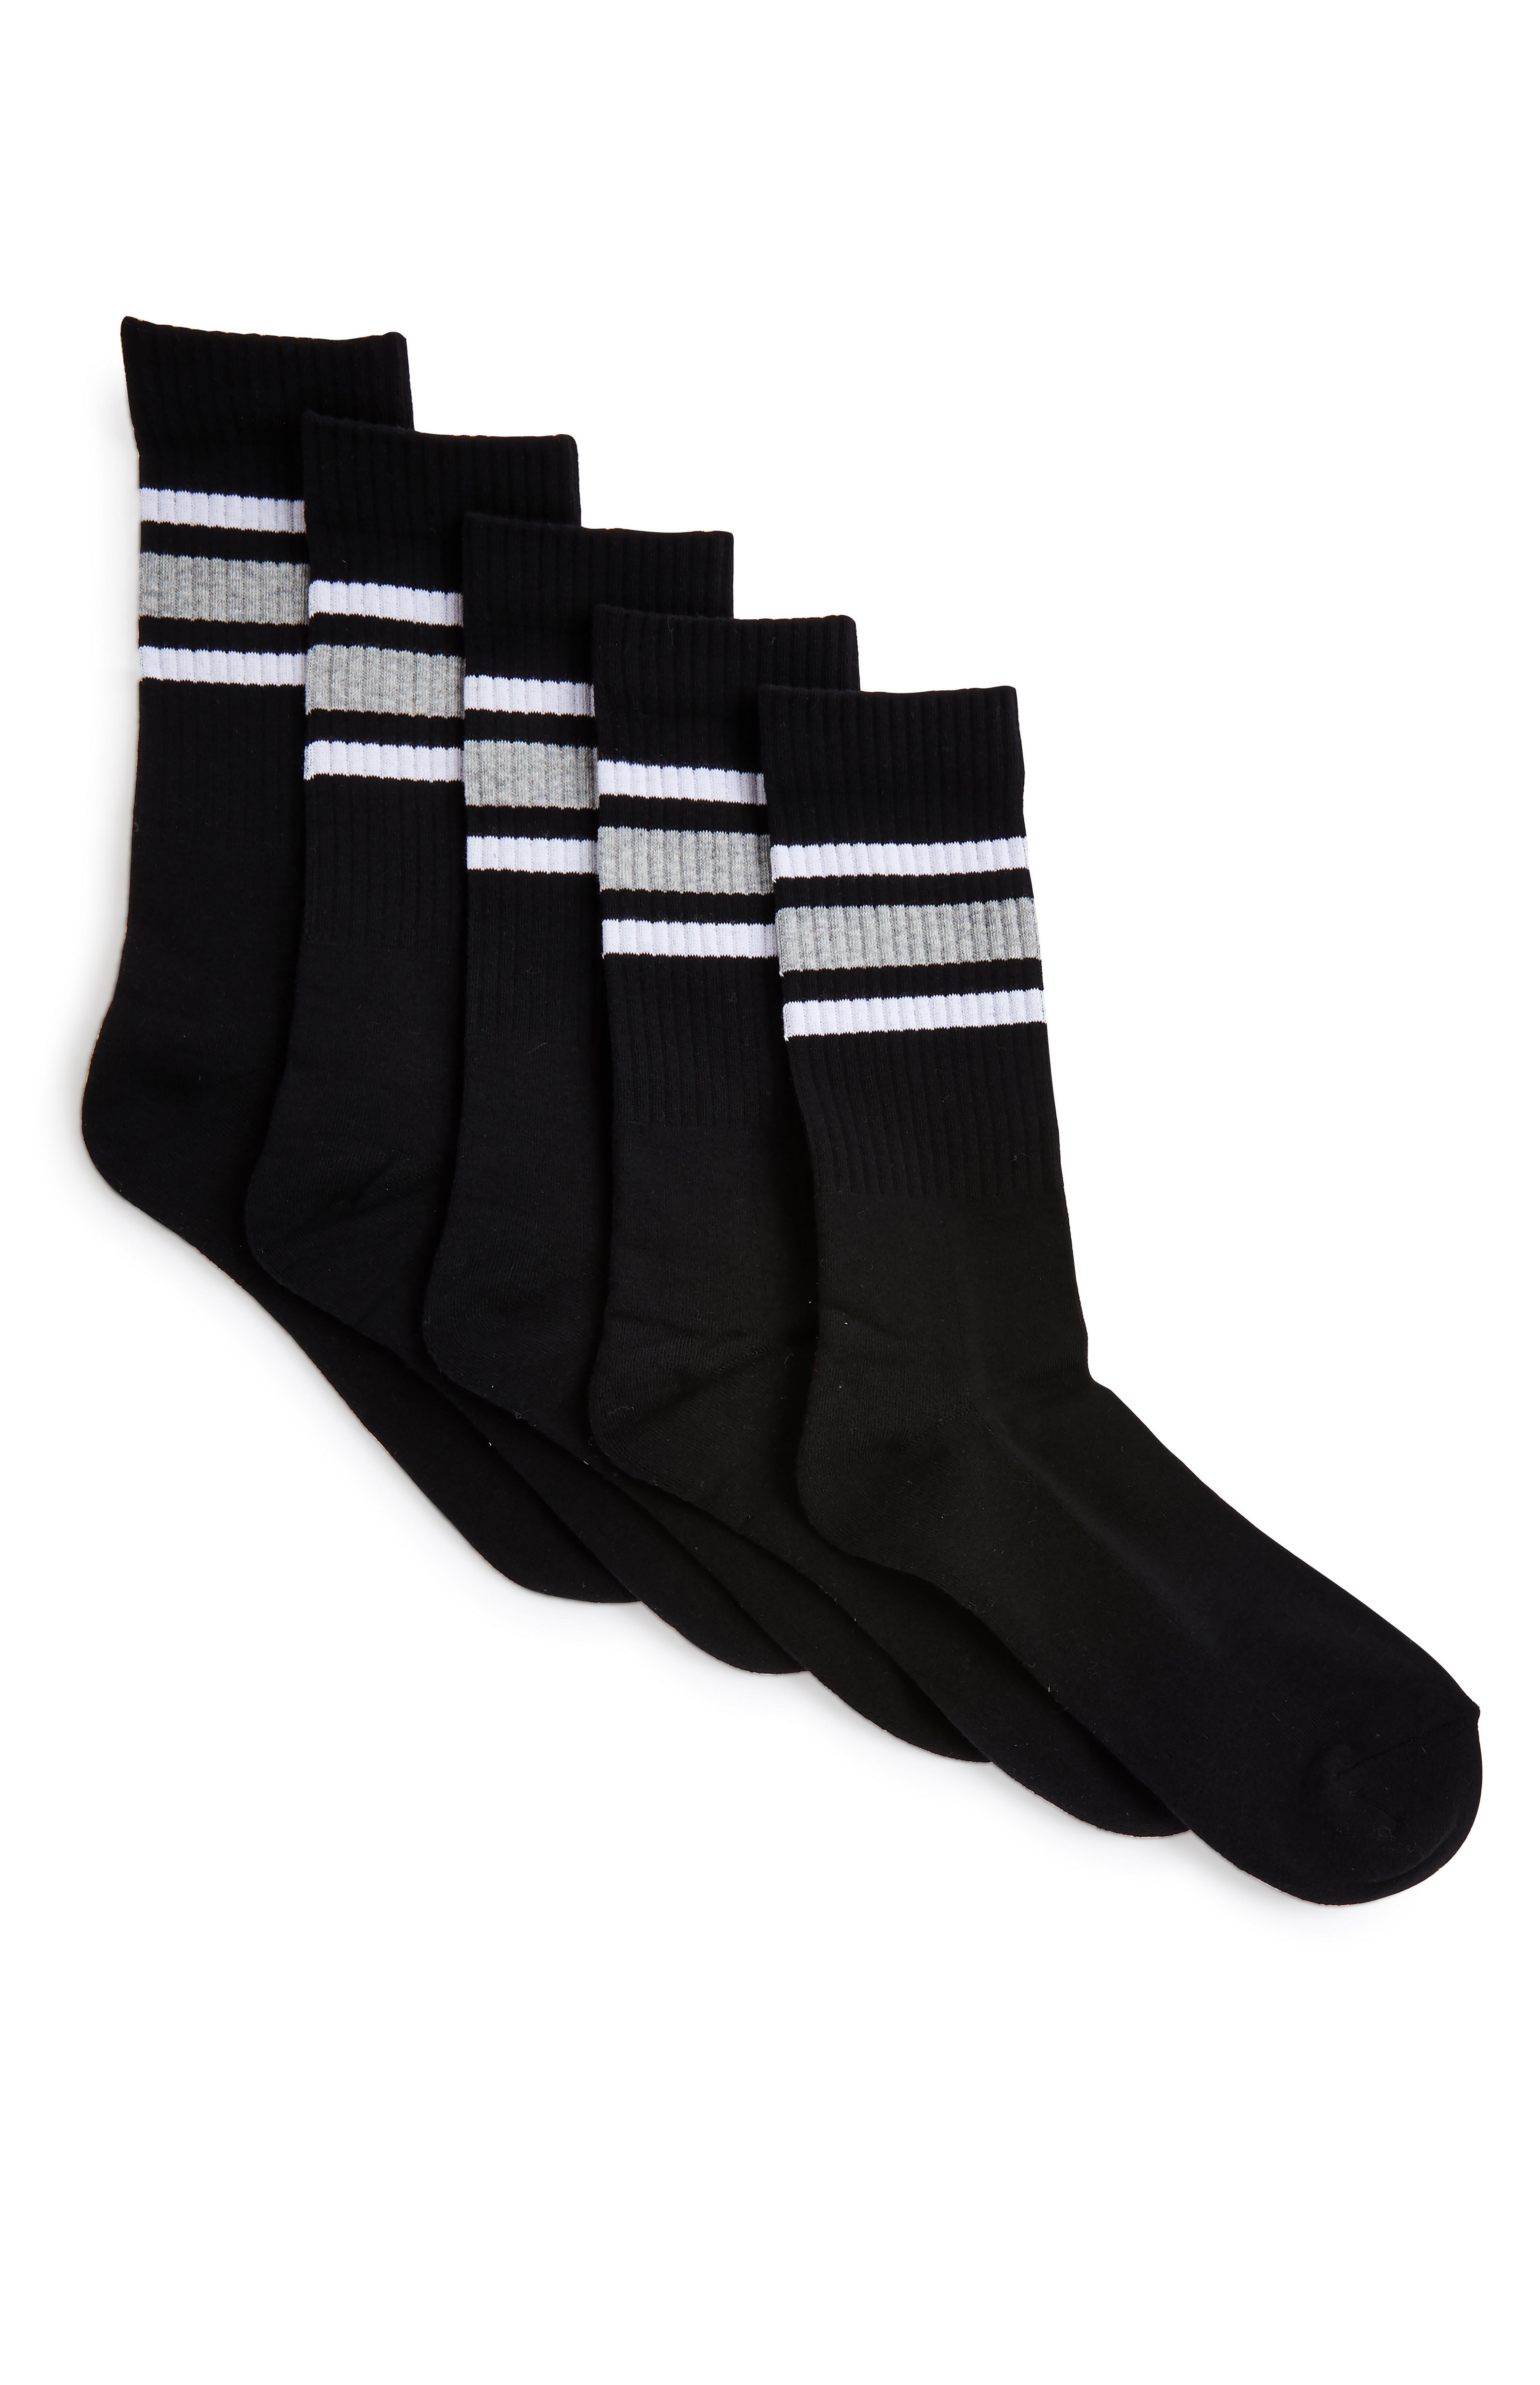 Black And Grey Stripe Sports Socks 5 Pack | Men's Sports Socks | Men's ...